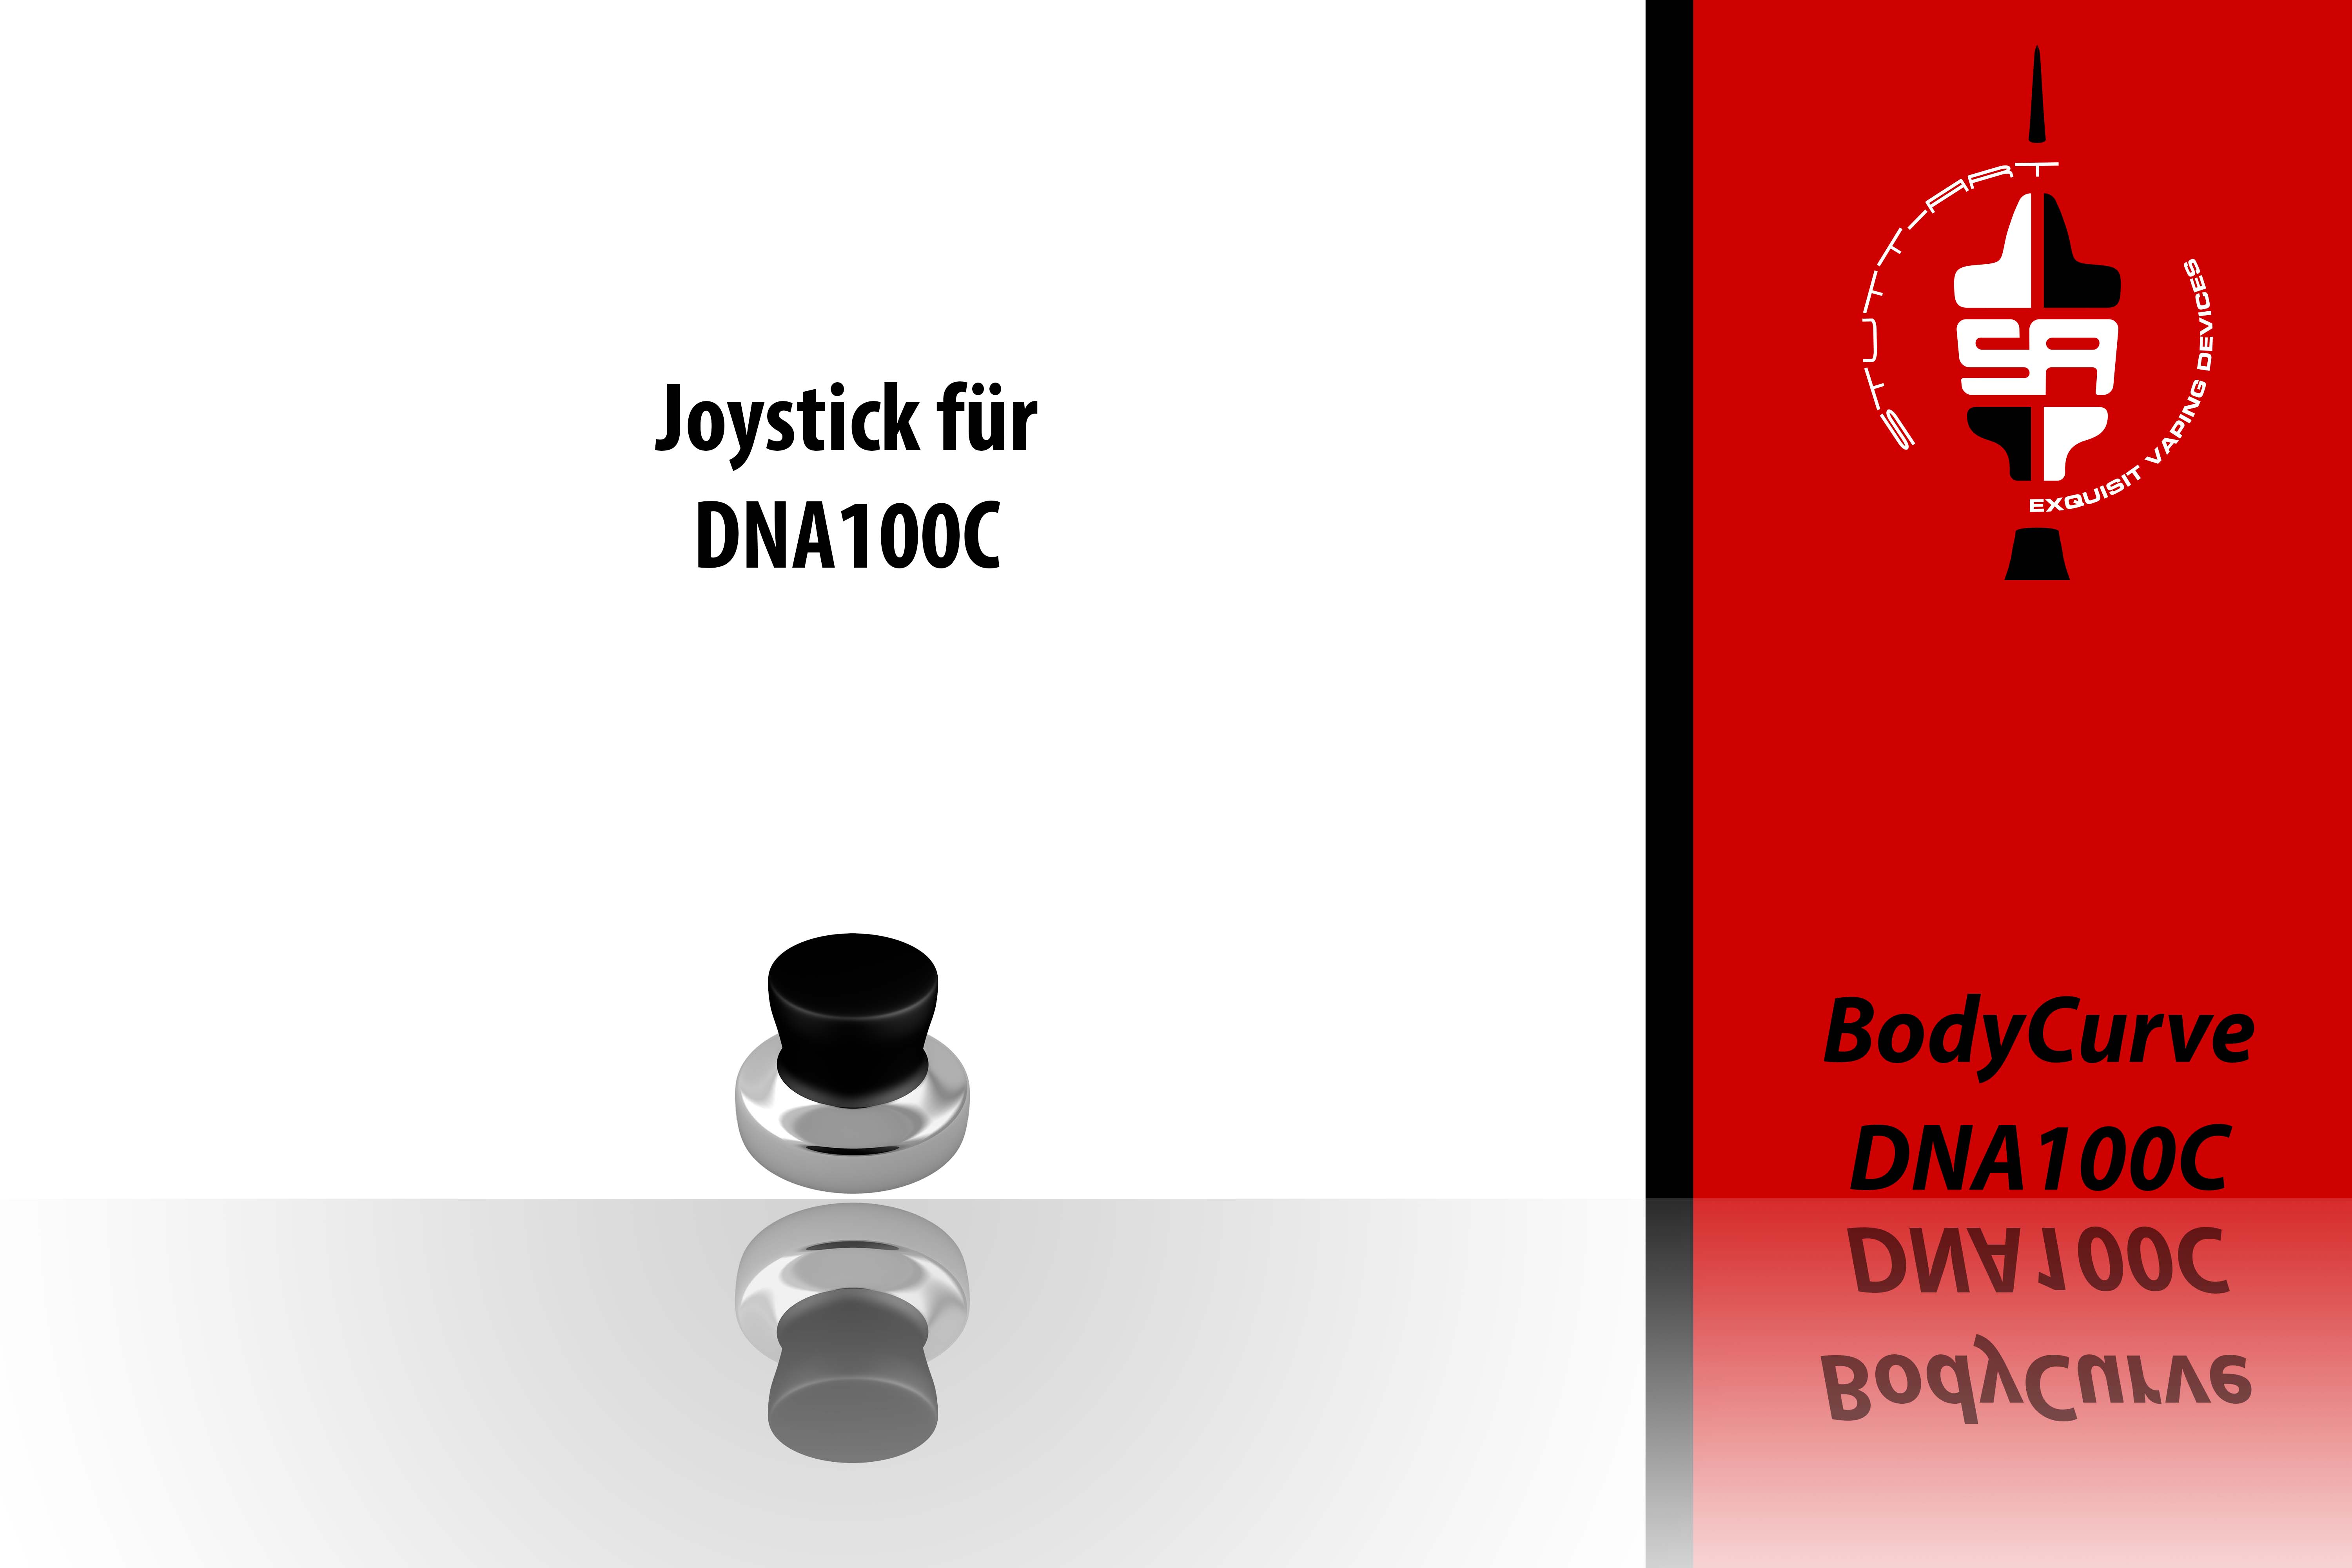 Joystick für Bodycurve DNA100C